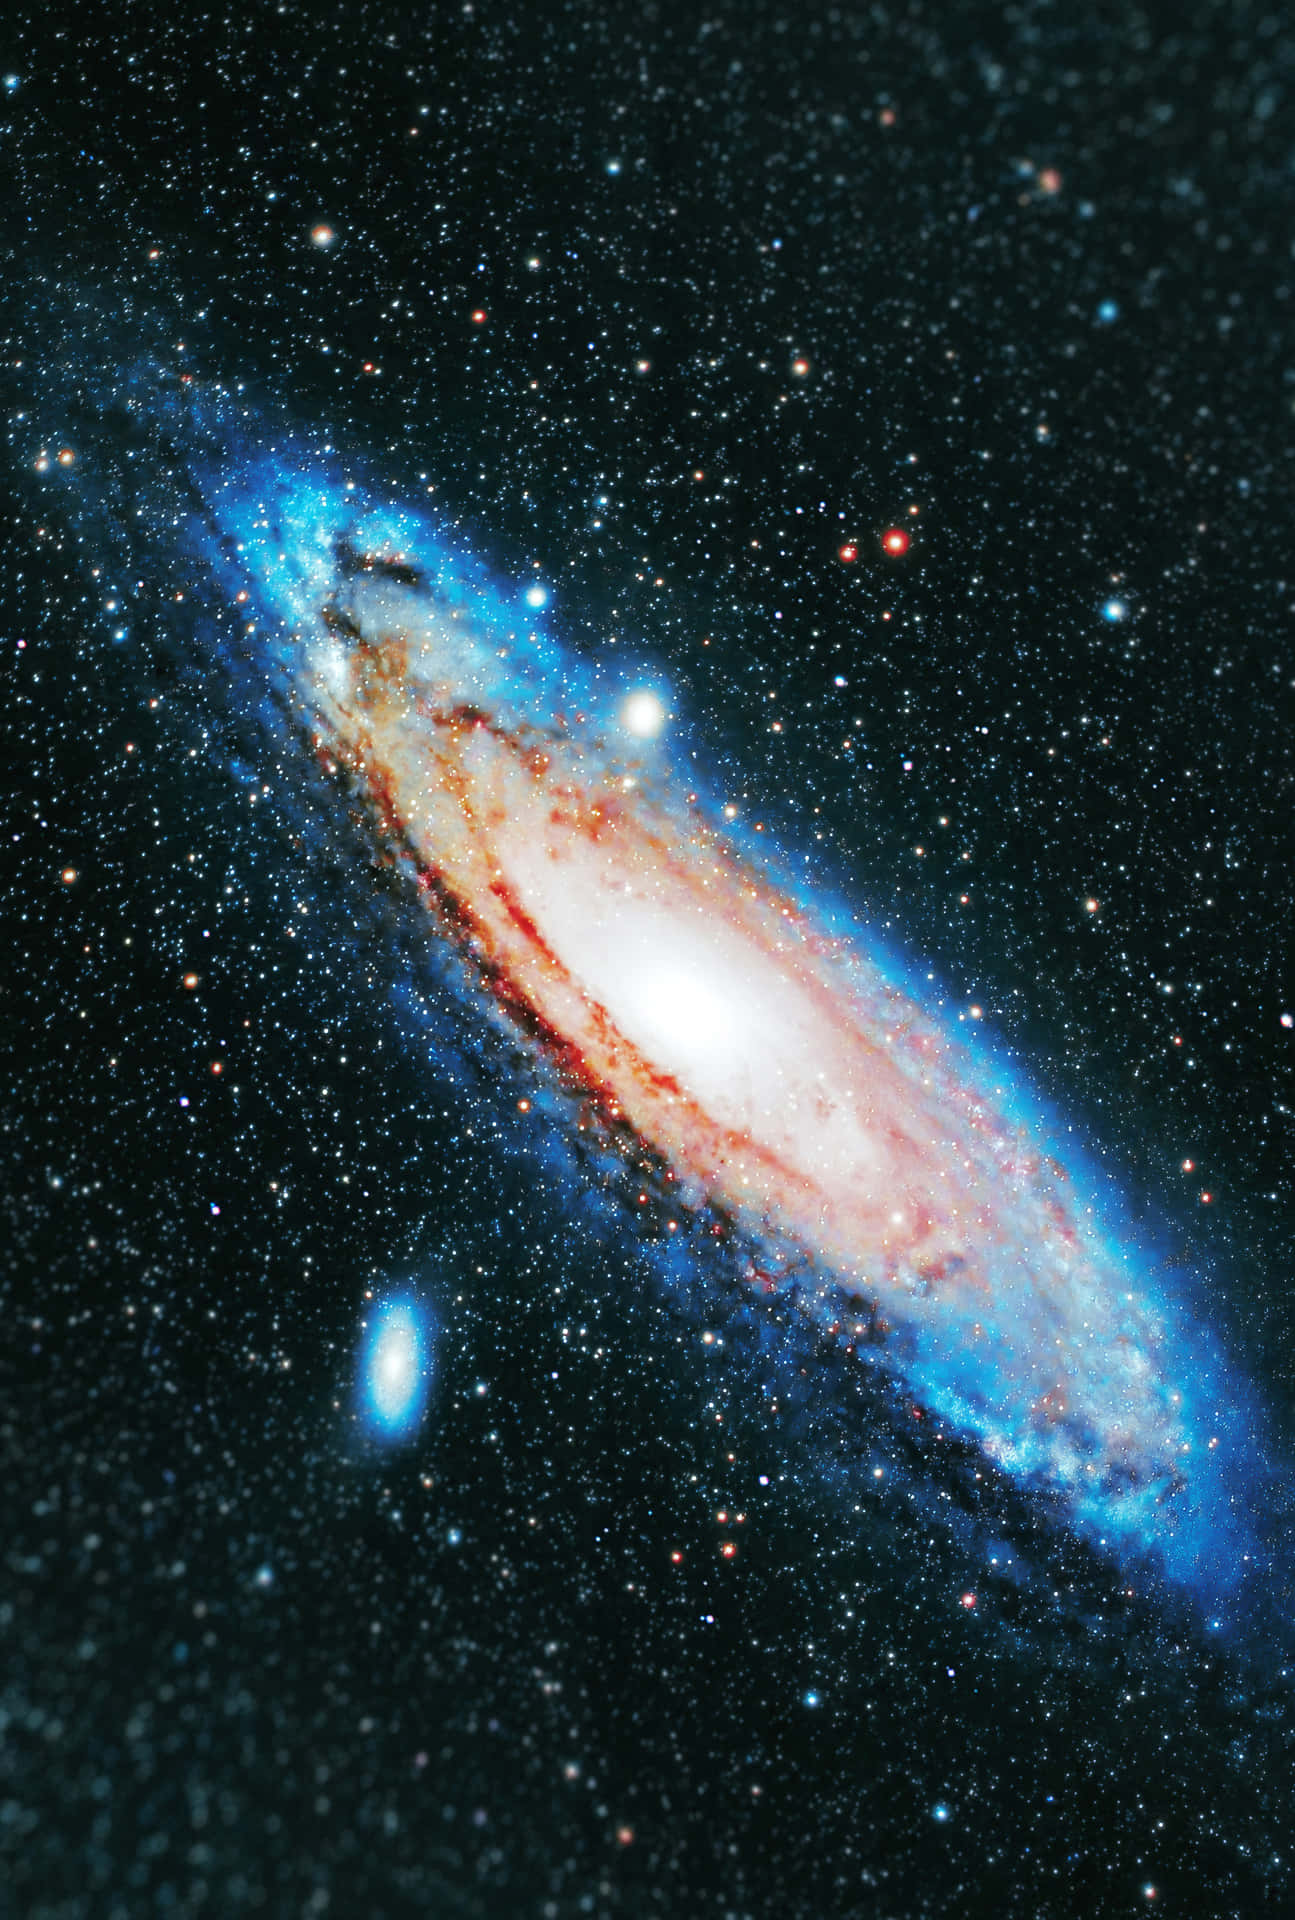 Umaimagem Deslumbrante Em 4k Da Galáxia De Andromeda. Papel de Parede